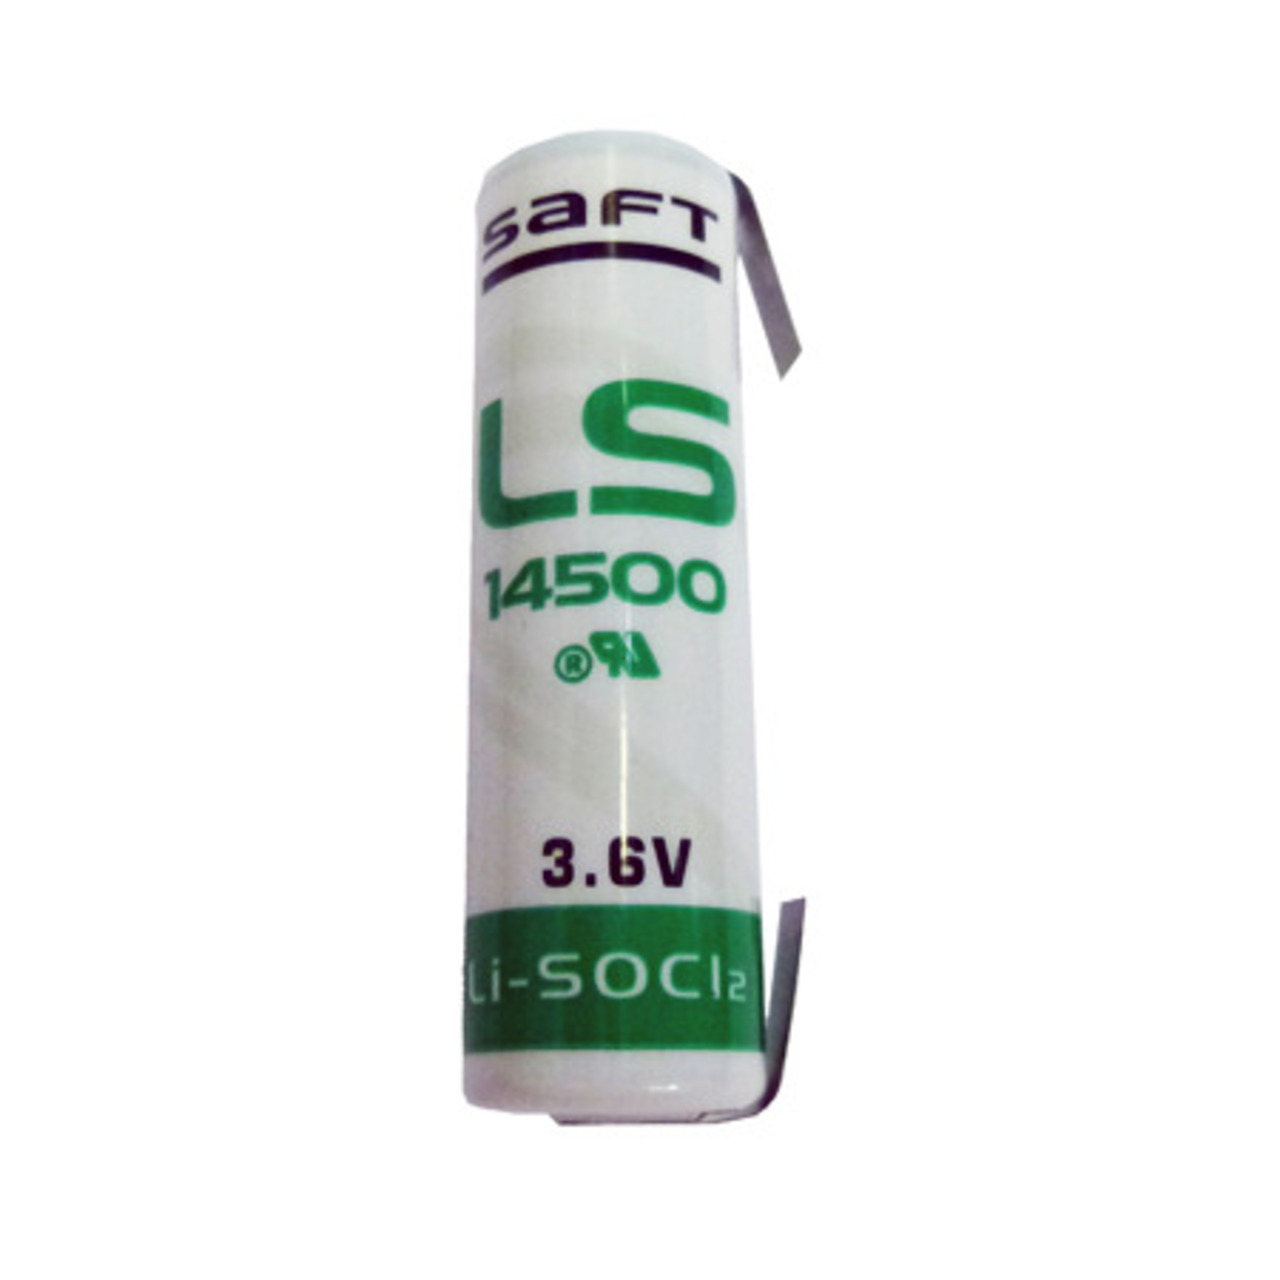 Saft Lithium Batterie mit Ltfahne LS-14500CNR- Mignon AA- 3-6 V- 2600 mAh